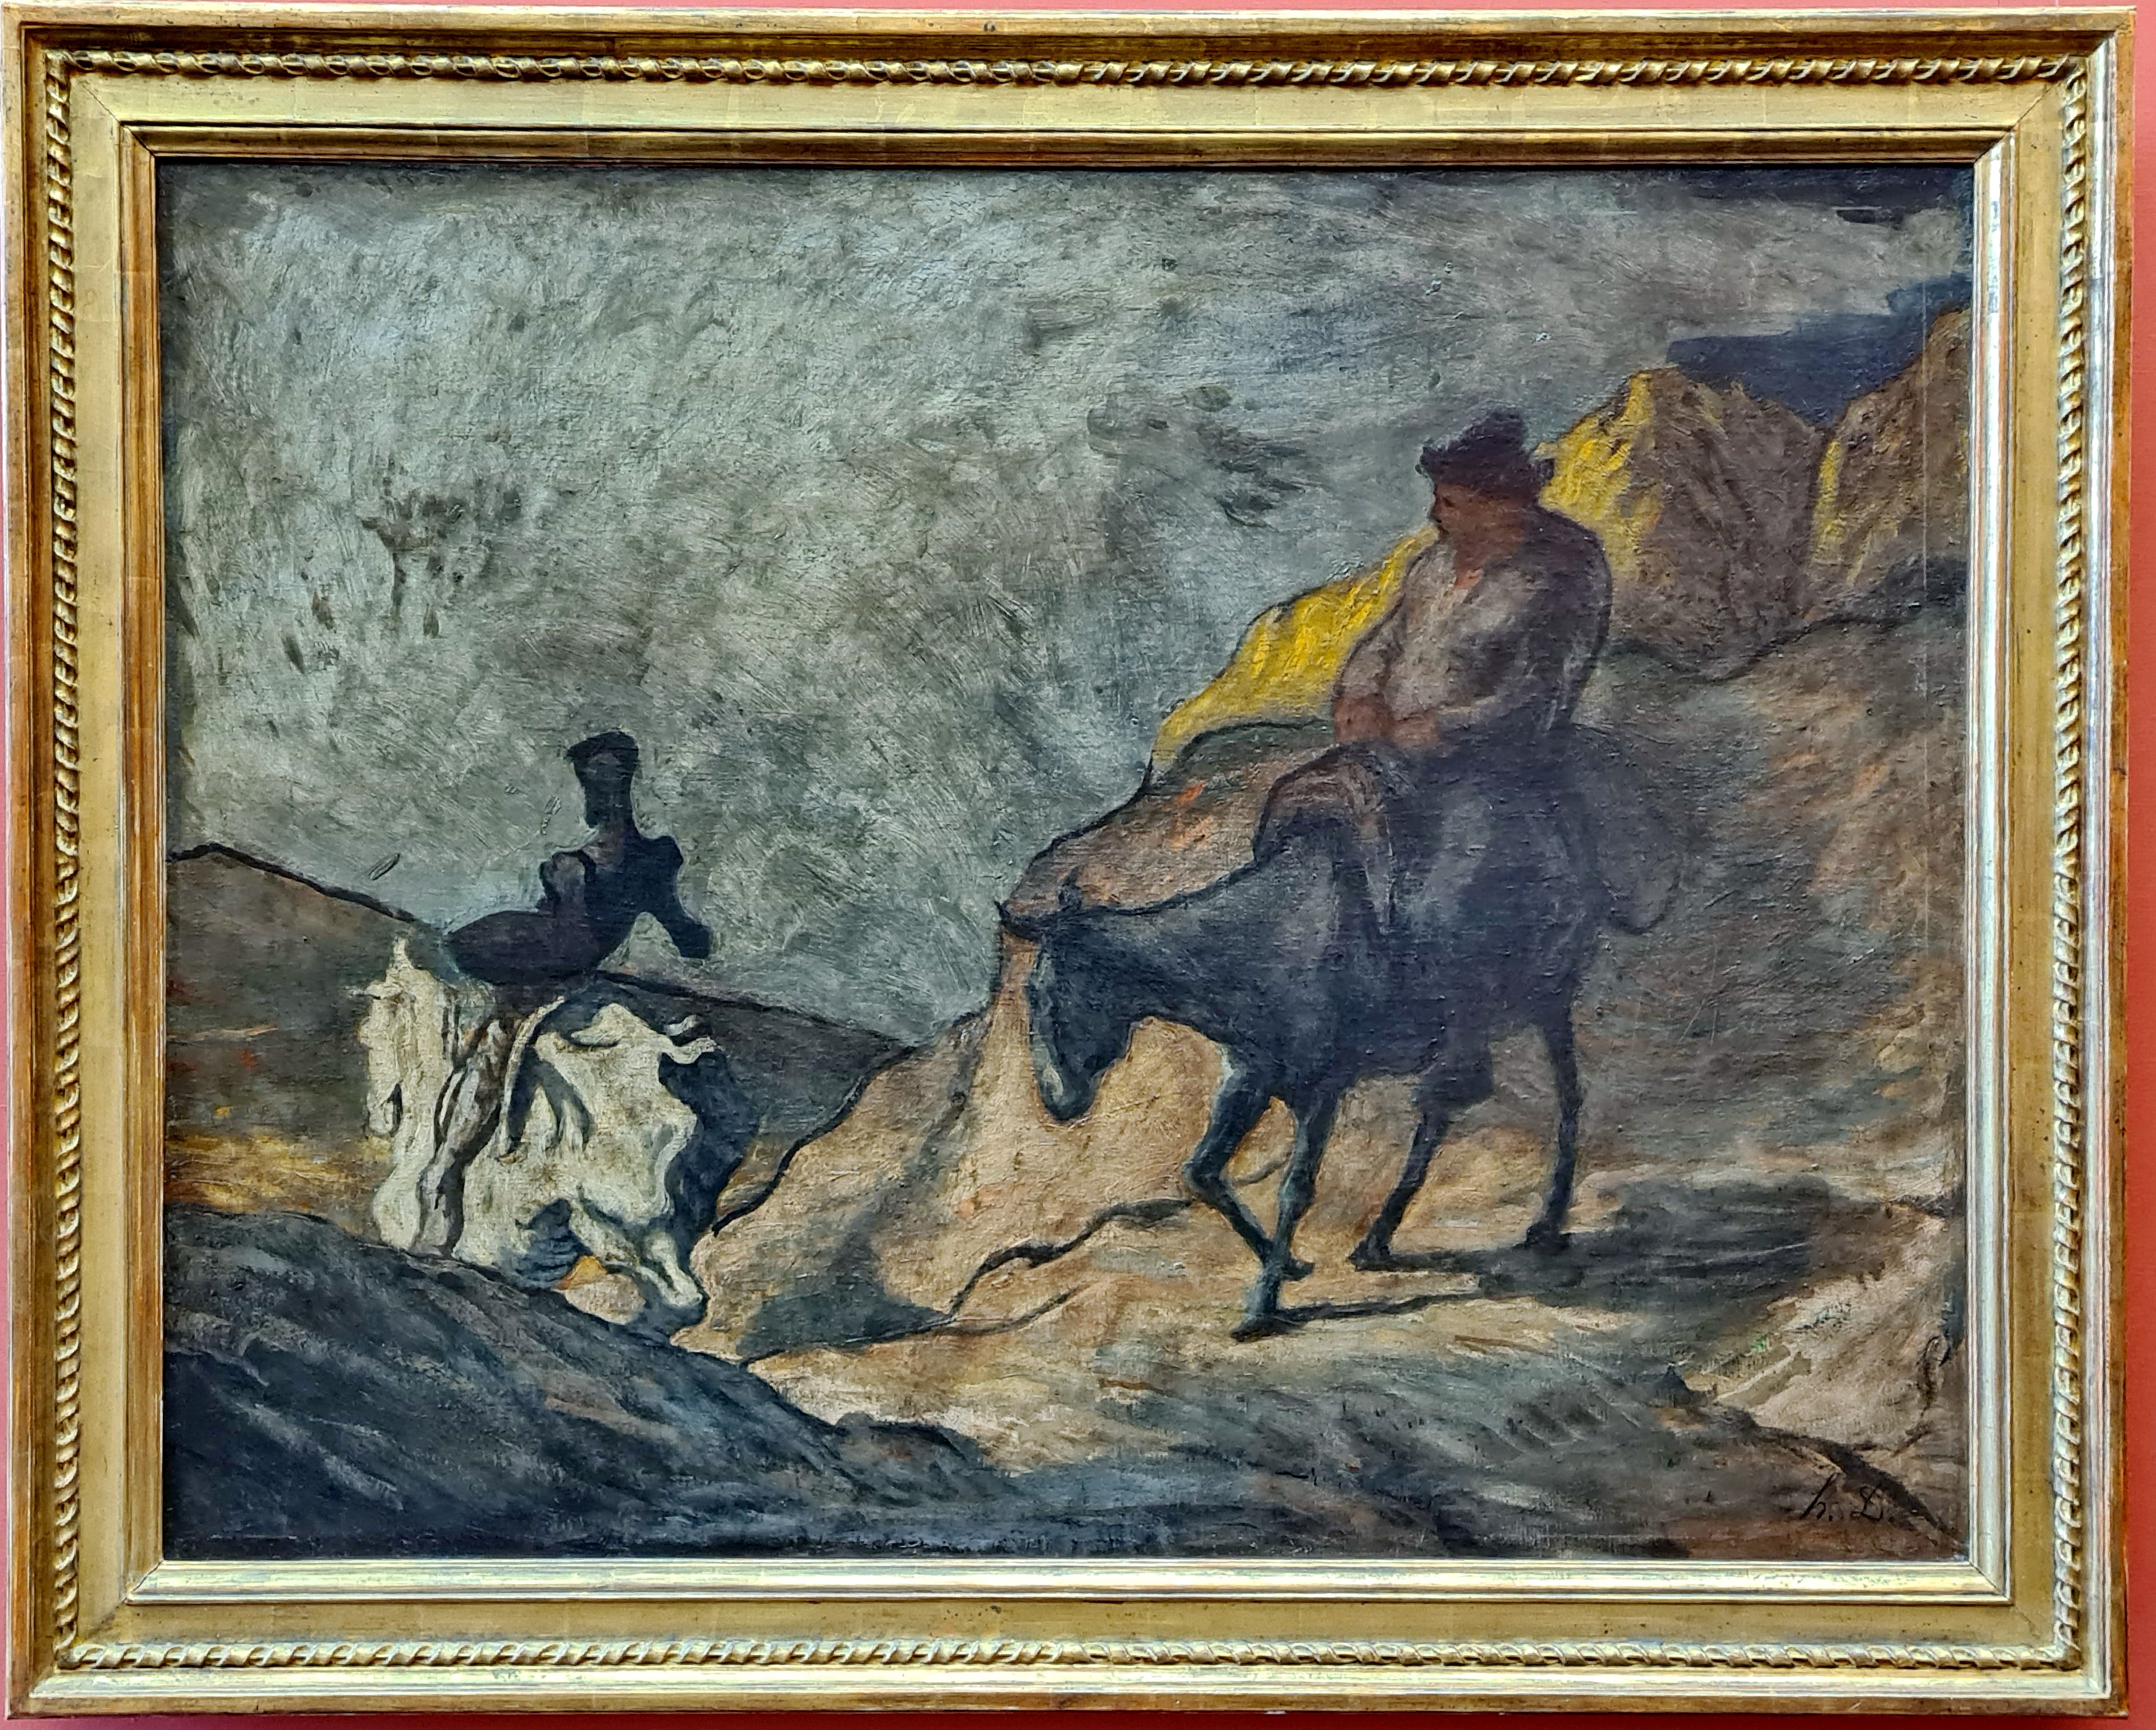  George M. Groutas Berlin, March 2022  Honoré Daumier (Marseille 1808-1879 Valmondois)  Don Quichotte und Sancho Pansa 1866. CC BY-SA 2.0.